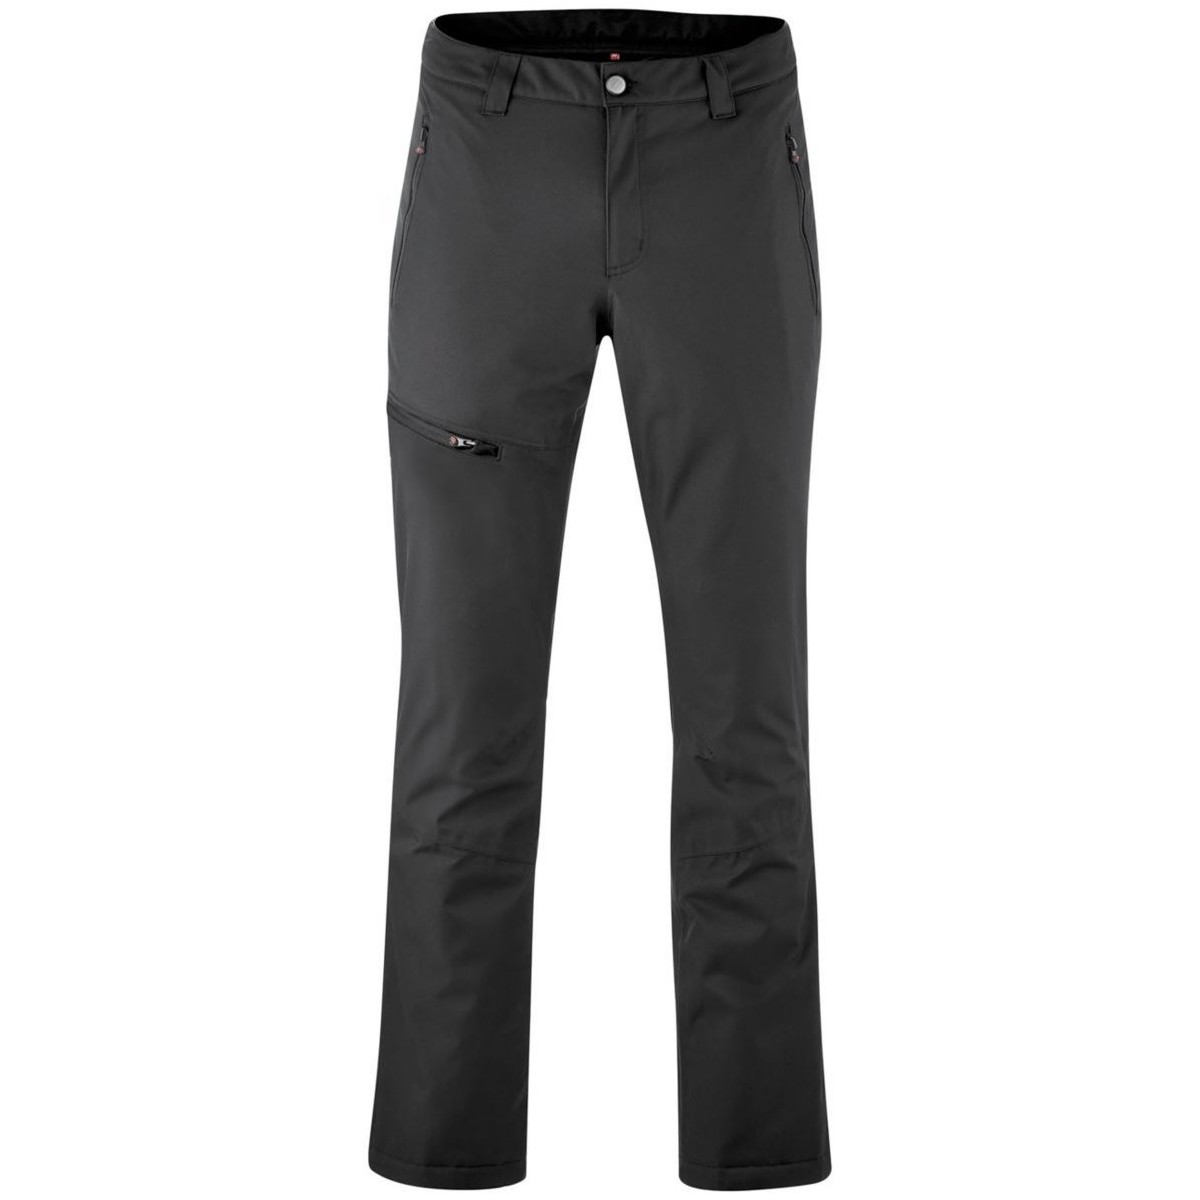 Textiel Heren Korte broeken / Bermuda's Maier Sports  Zwart